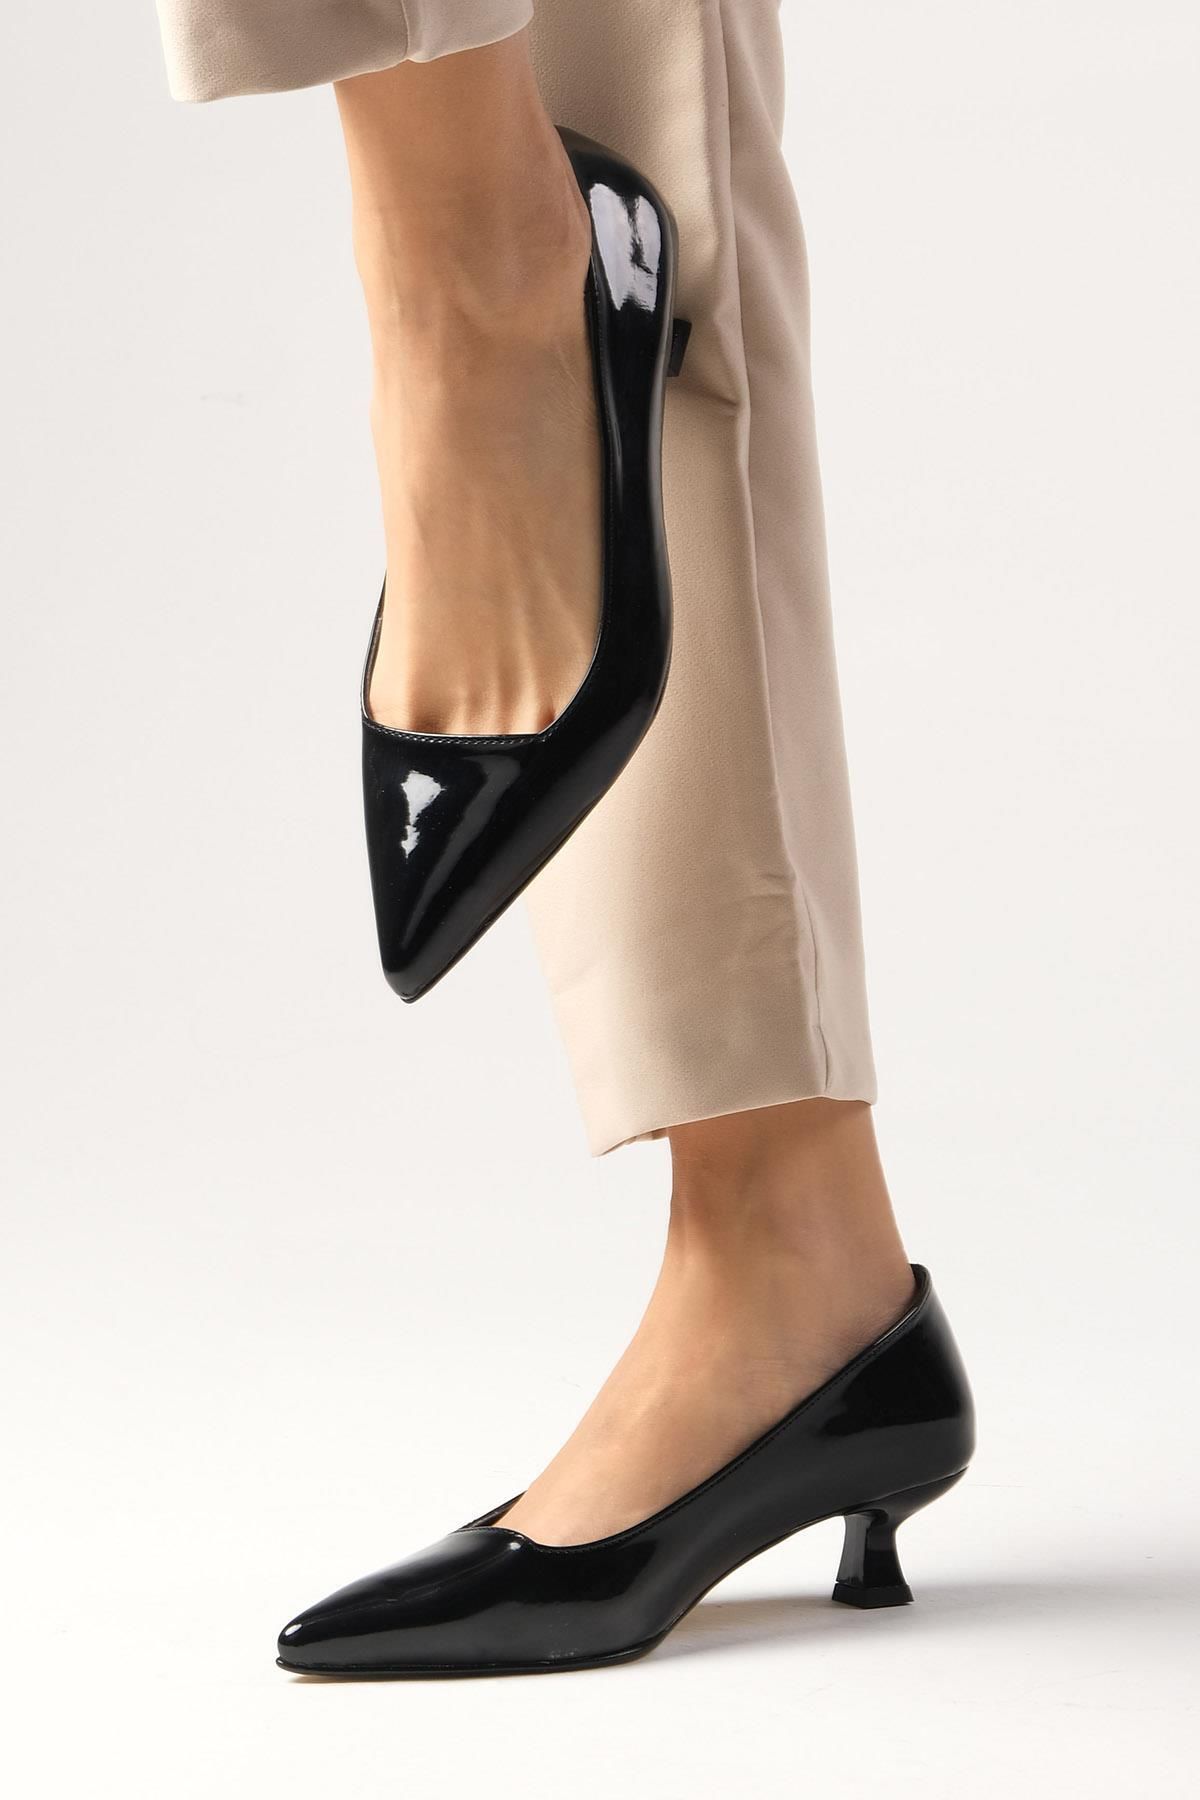 Mio Gusto Carmen Siyah Renk Rugan Kısa Topuklu Ayakkabı